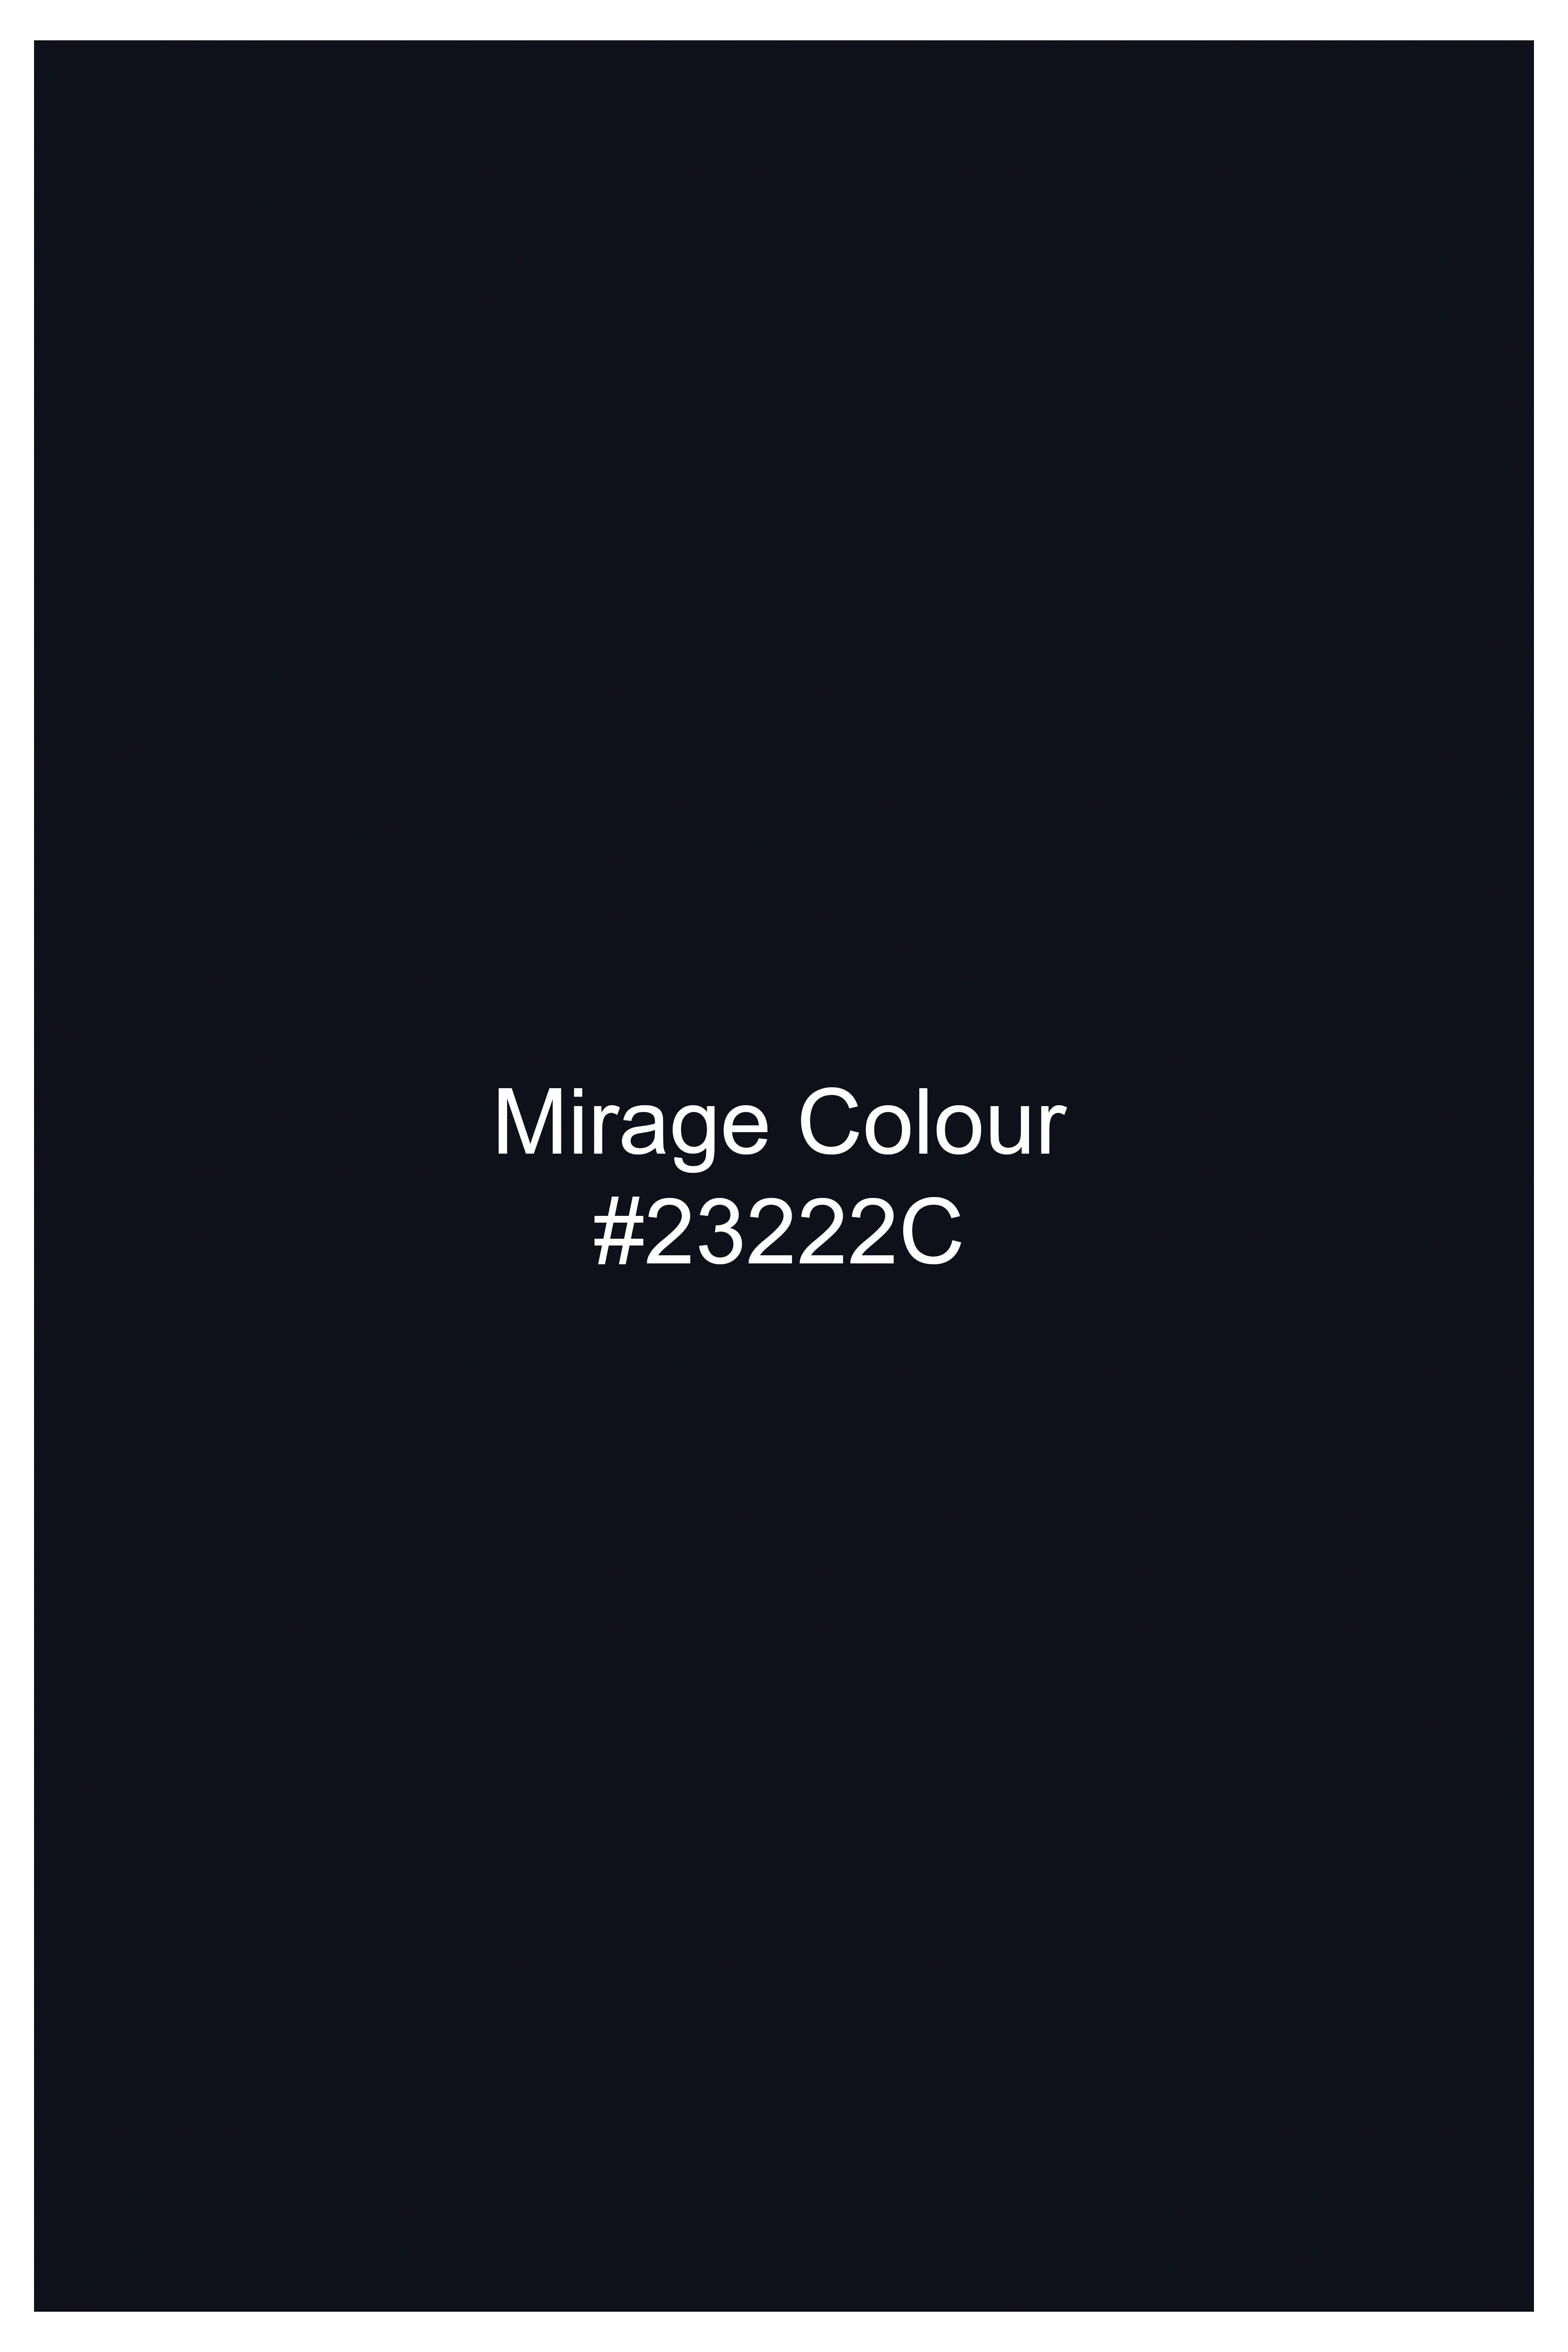 Mirage Blue Premium Cotton Designer Blazer BL2759-D188-36, BL2759-D188-38, BL2759-D188-40, BL2759-D188-42, BL2759-D188-44, BL2759-D188-46, BL2759-D188-48, BL2759-D188-50, BL2759-D188-52, BL2759-D188-54, BL2759-D188-56, BL2759-D188-58, BL2759-D188-60